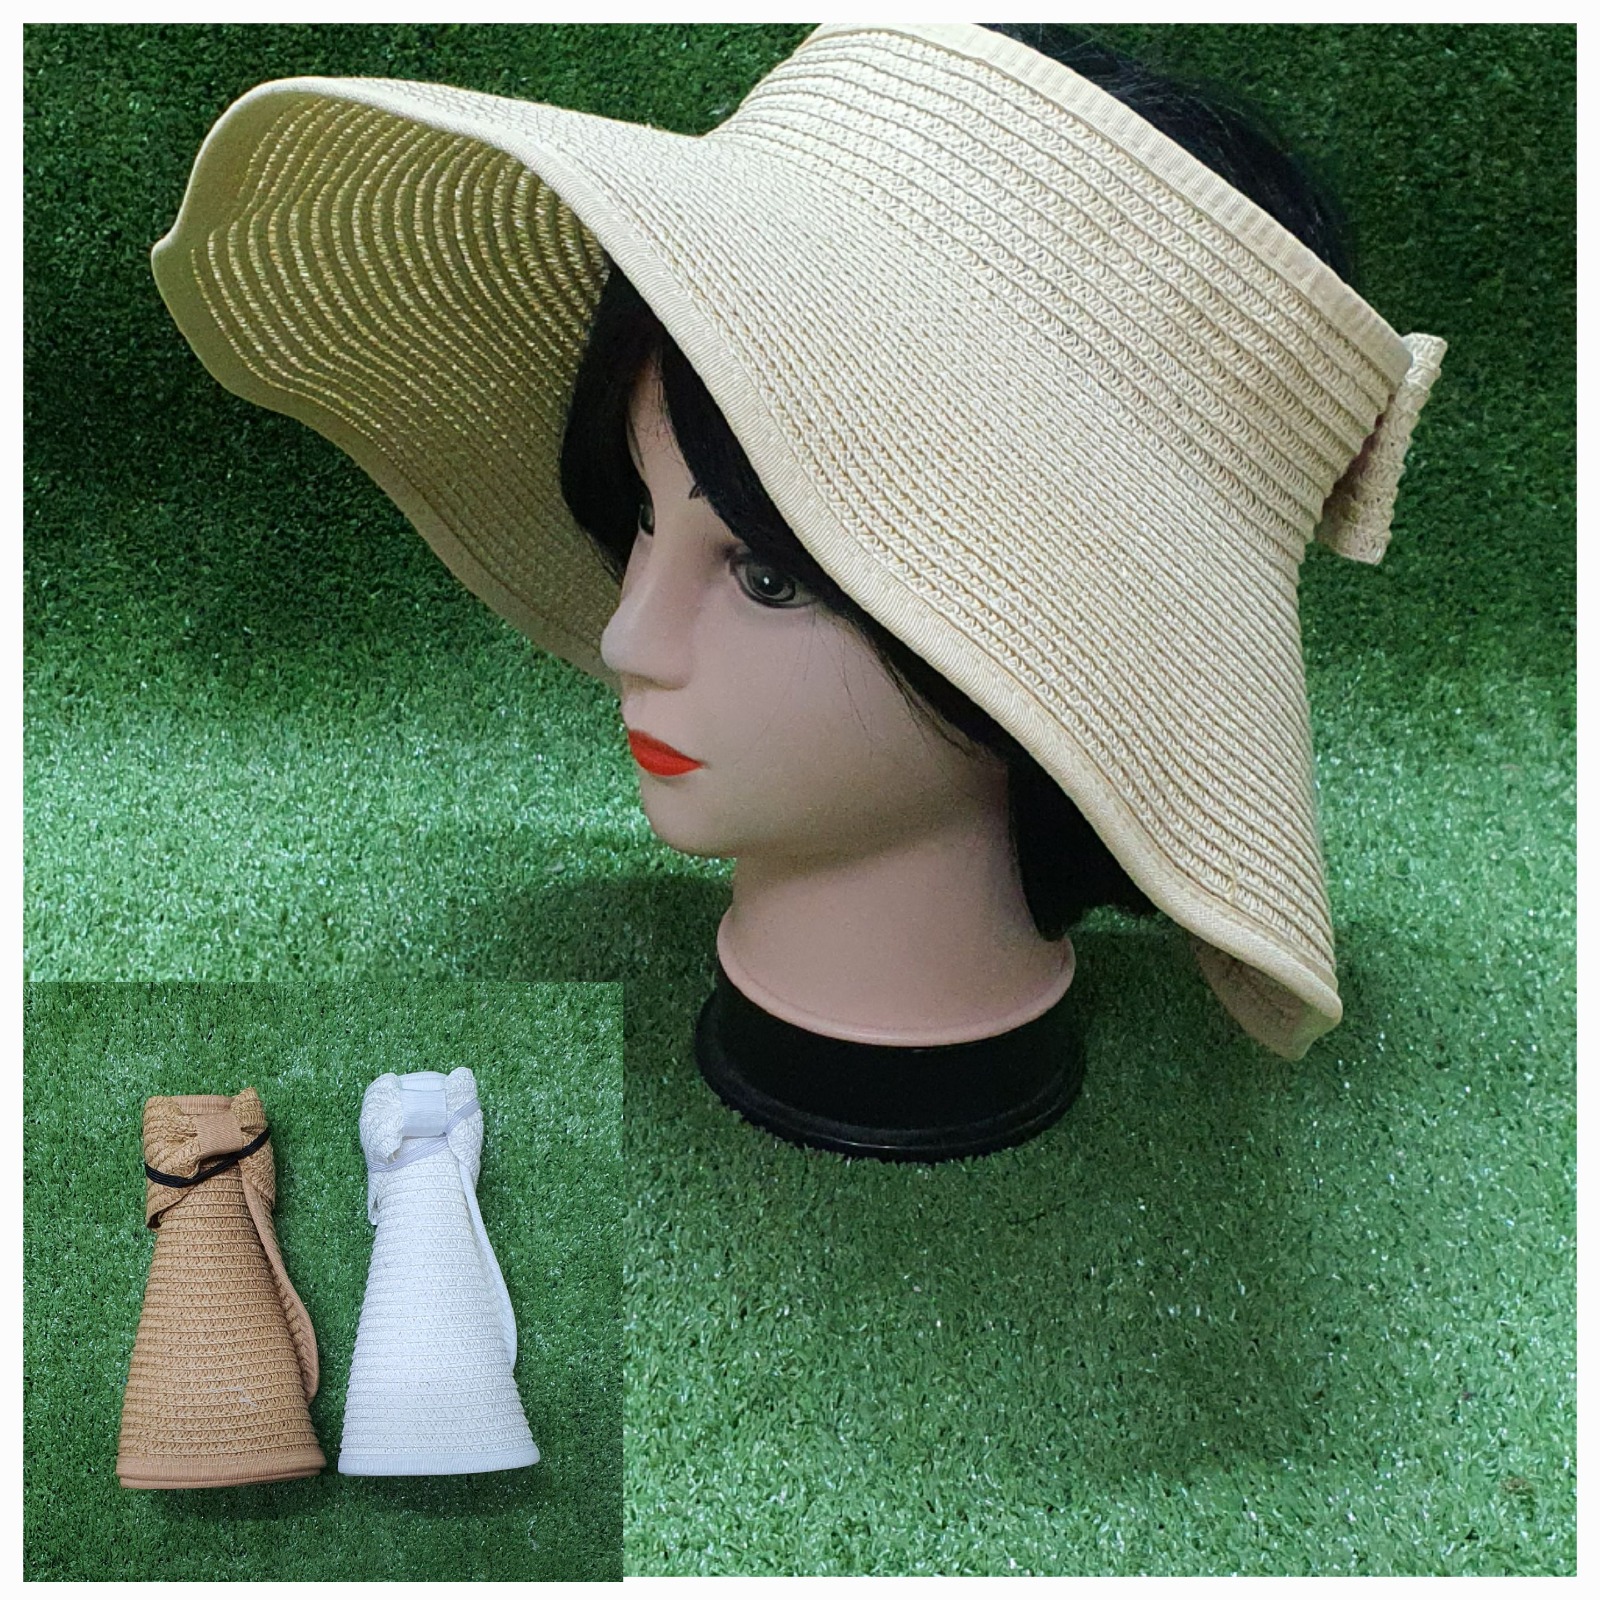 כובע נשים עשוי בד דמוי קש.
שוליים רחבים להגנה גבוהה על הפנים מפני השמש.
כובע שמתקפל לתיק ונוח לנשיאה לכל מקום. 
ONE SIZE.